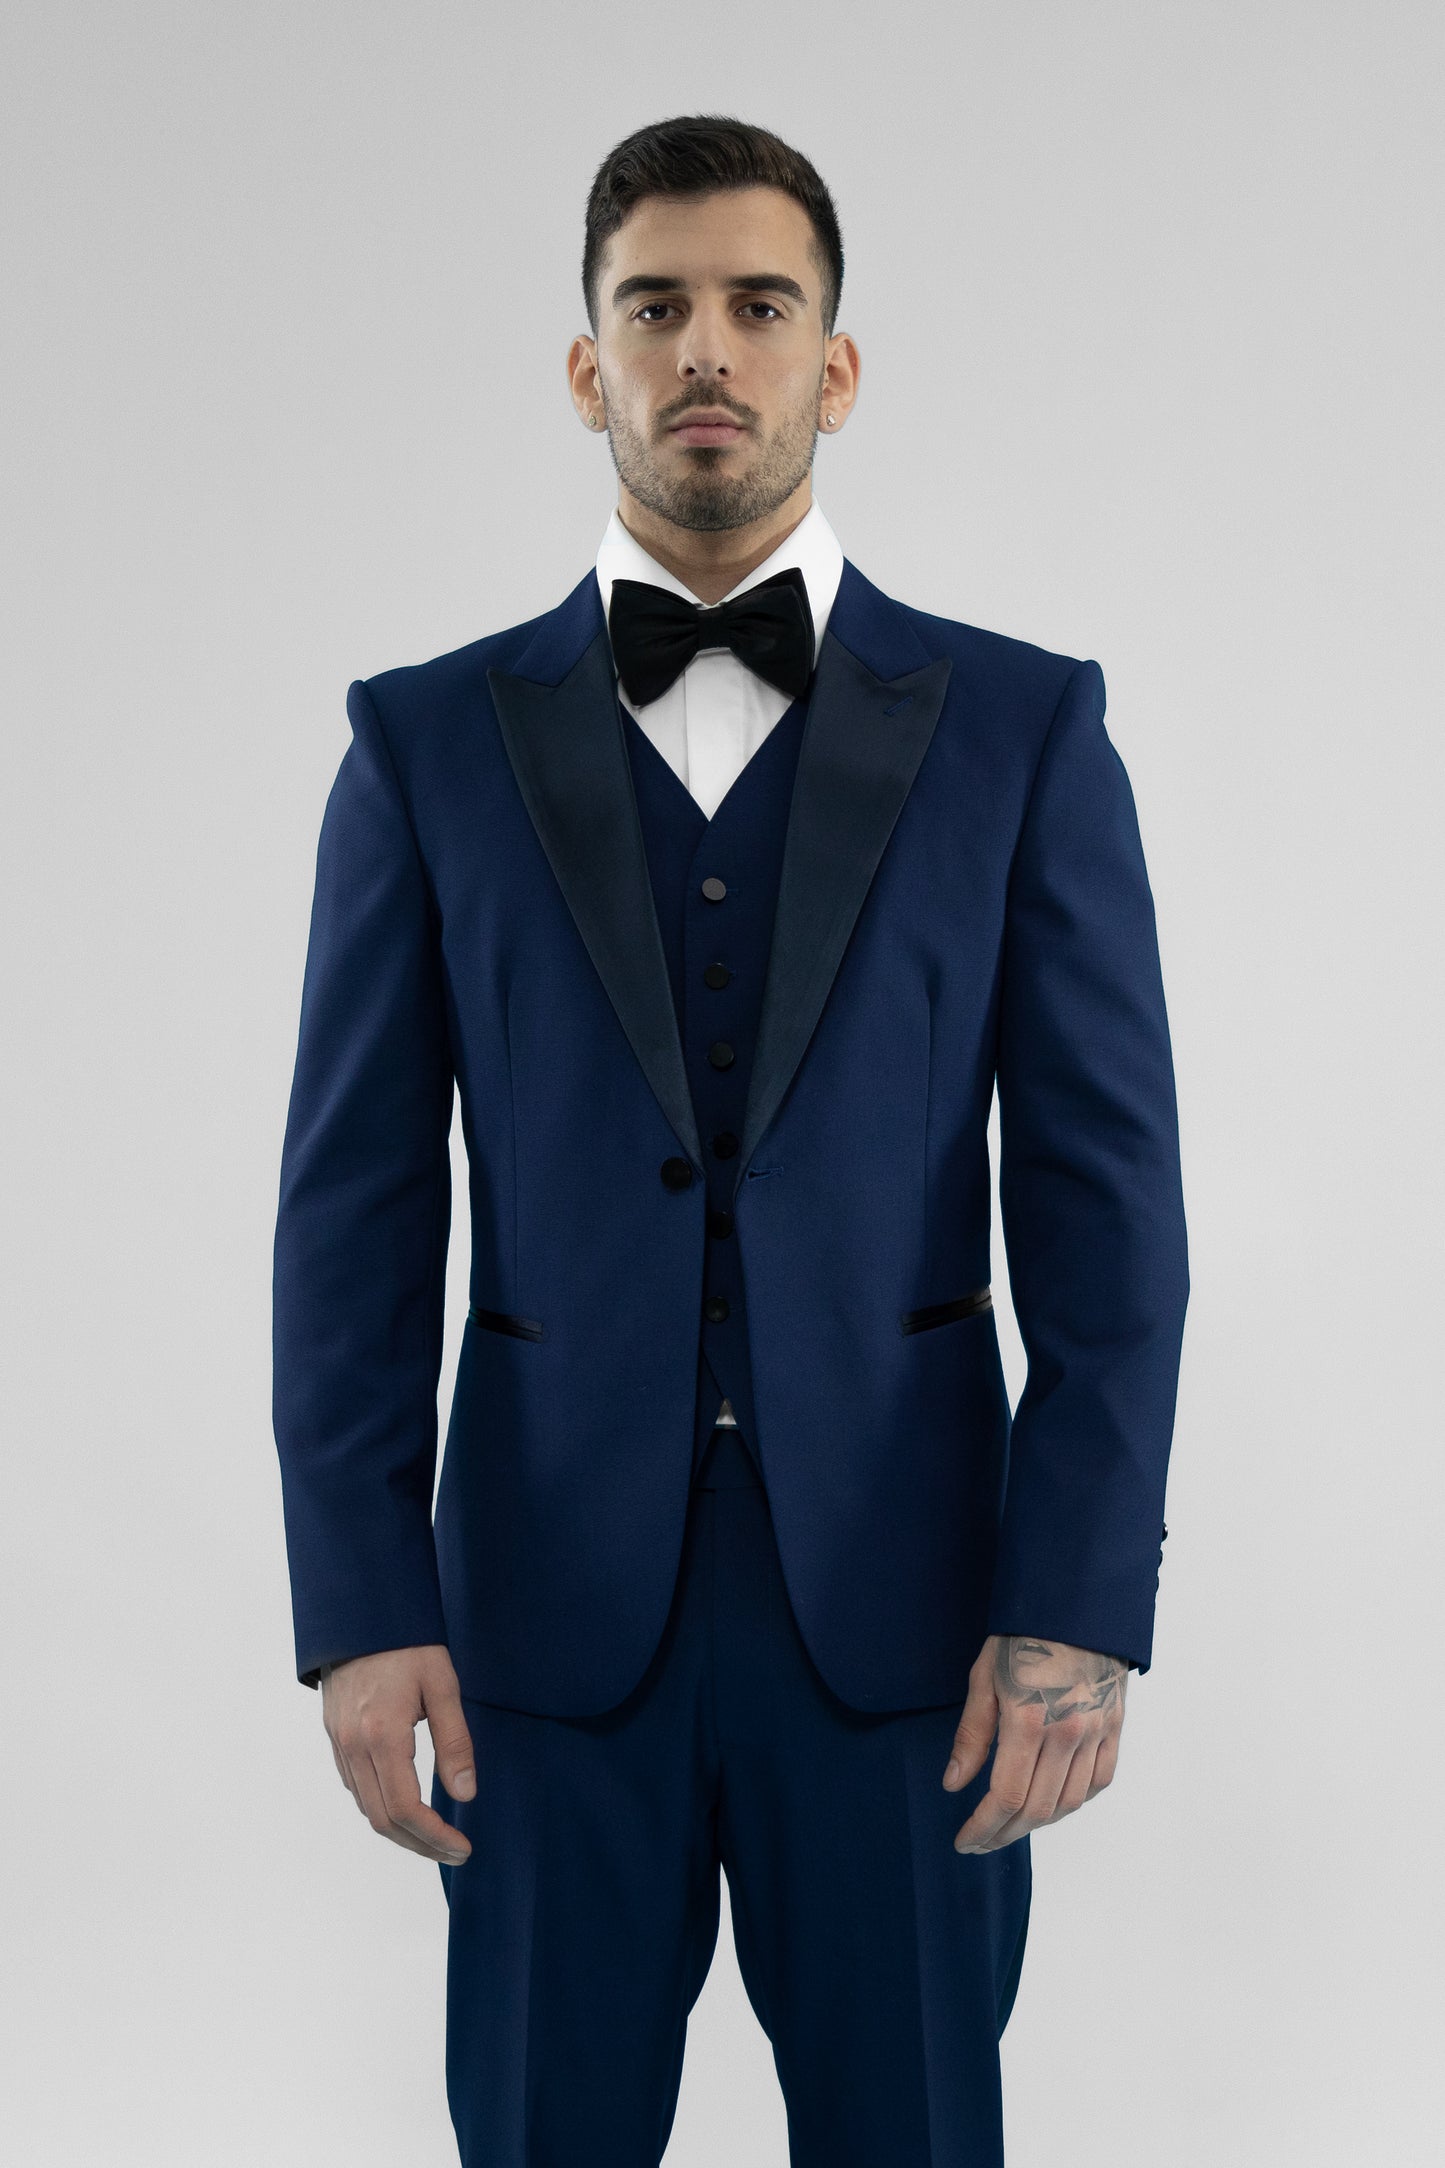 Buy Blue Suit